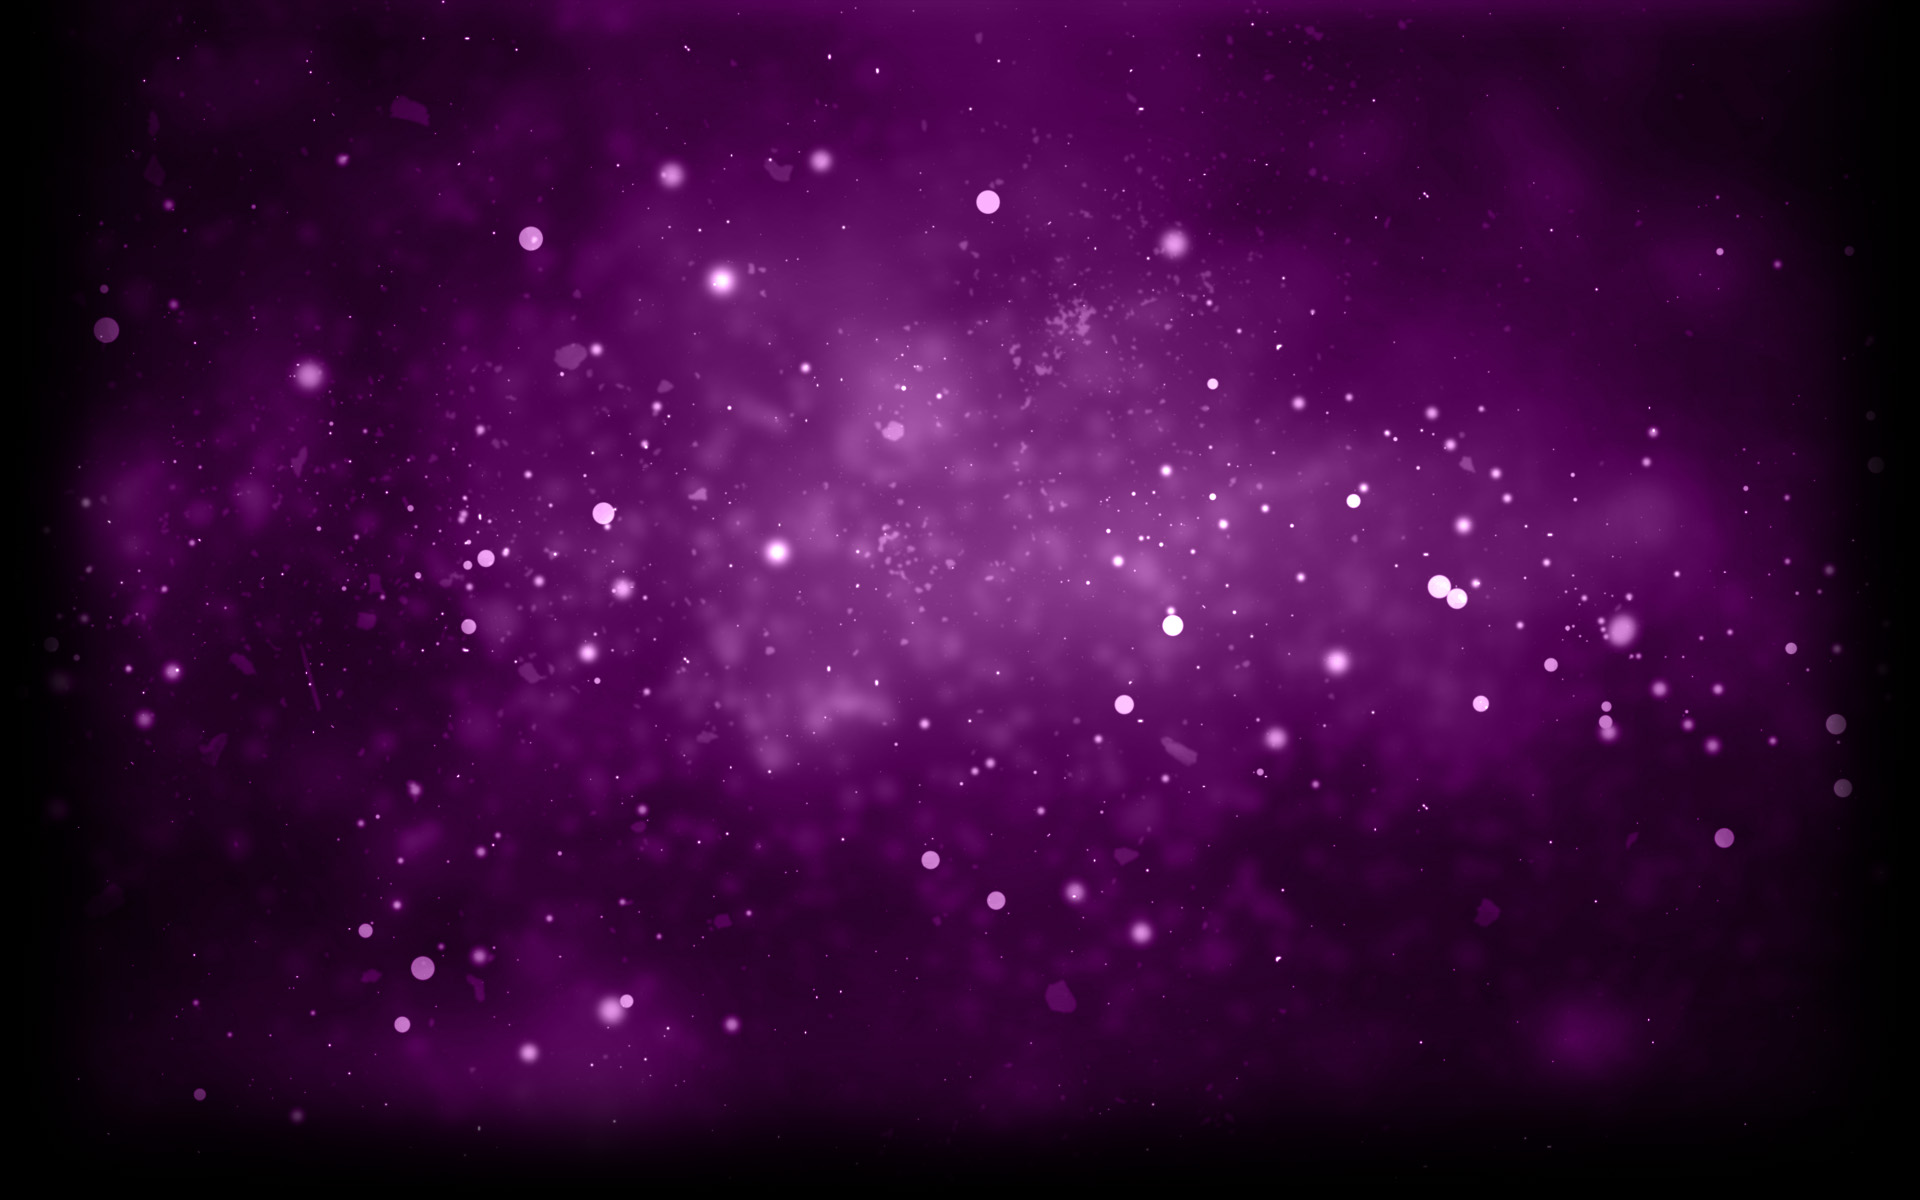 Purple Sparks - một bức tranh màu tím rực rỡ, mang đến cảm giác thăng hoa và mơ mộng. Nếu bạn yêu thích màu tím, hãy đến và chiêm ngưỡng ngay bức ảnh này.